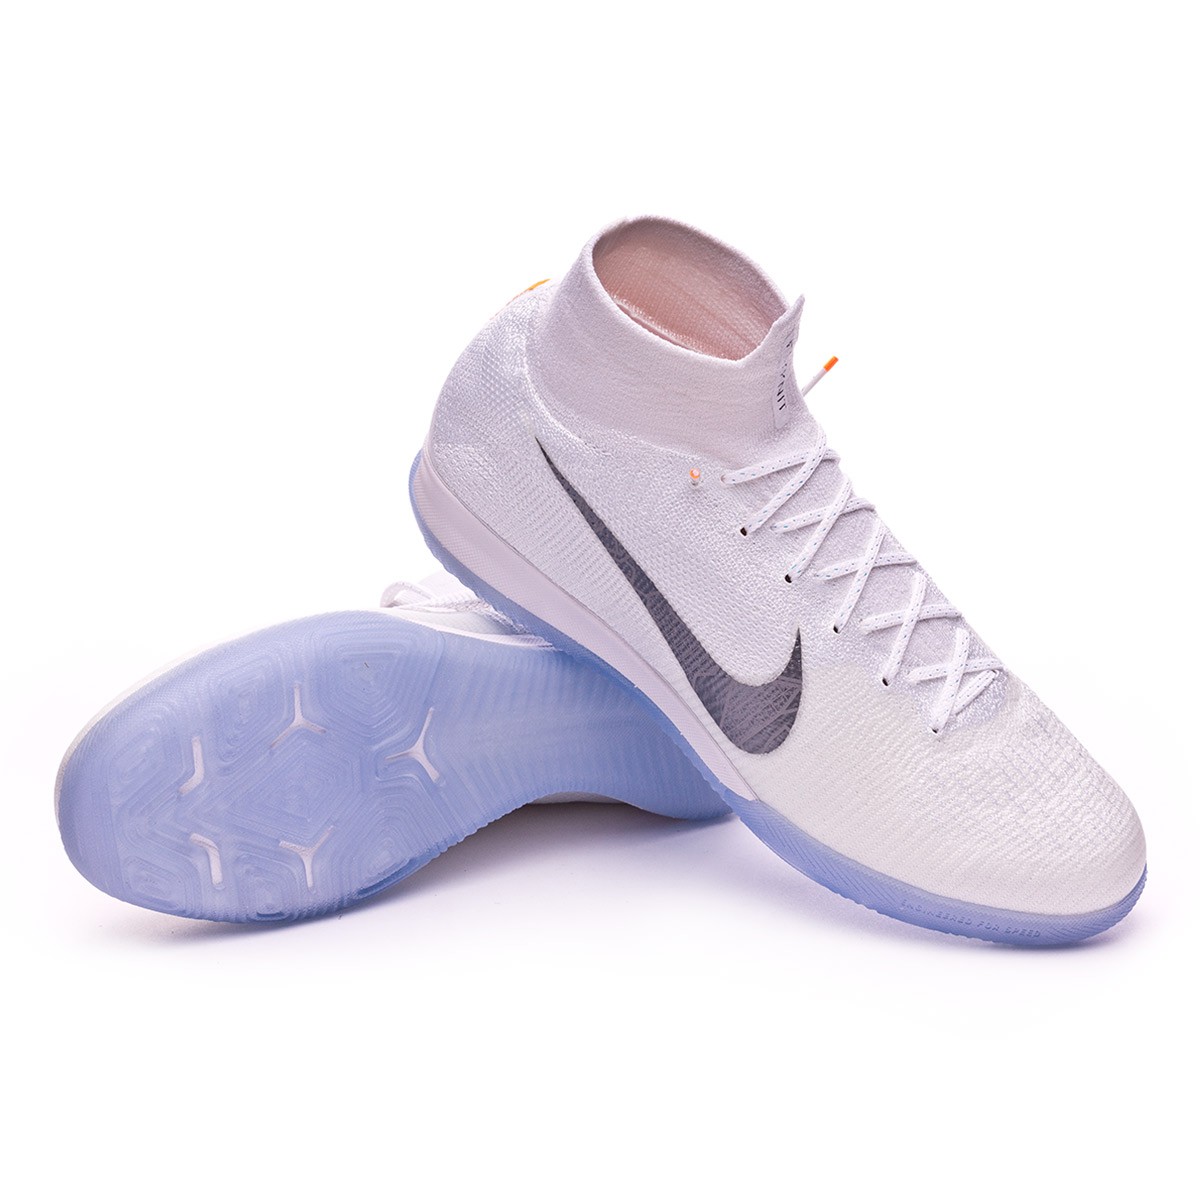 Zapatilla Nike Mercurial SuperflyX VI Elite IC White-Metallic cool grey -  Tienda de fútbol Fútbol Emotion